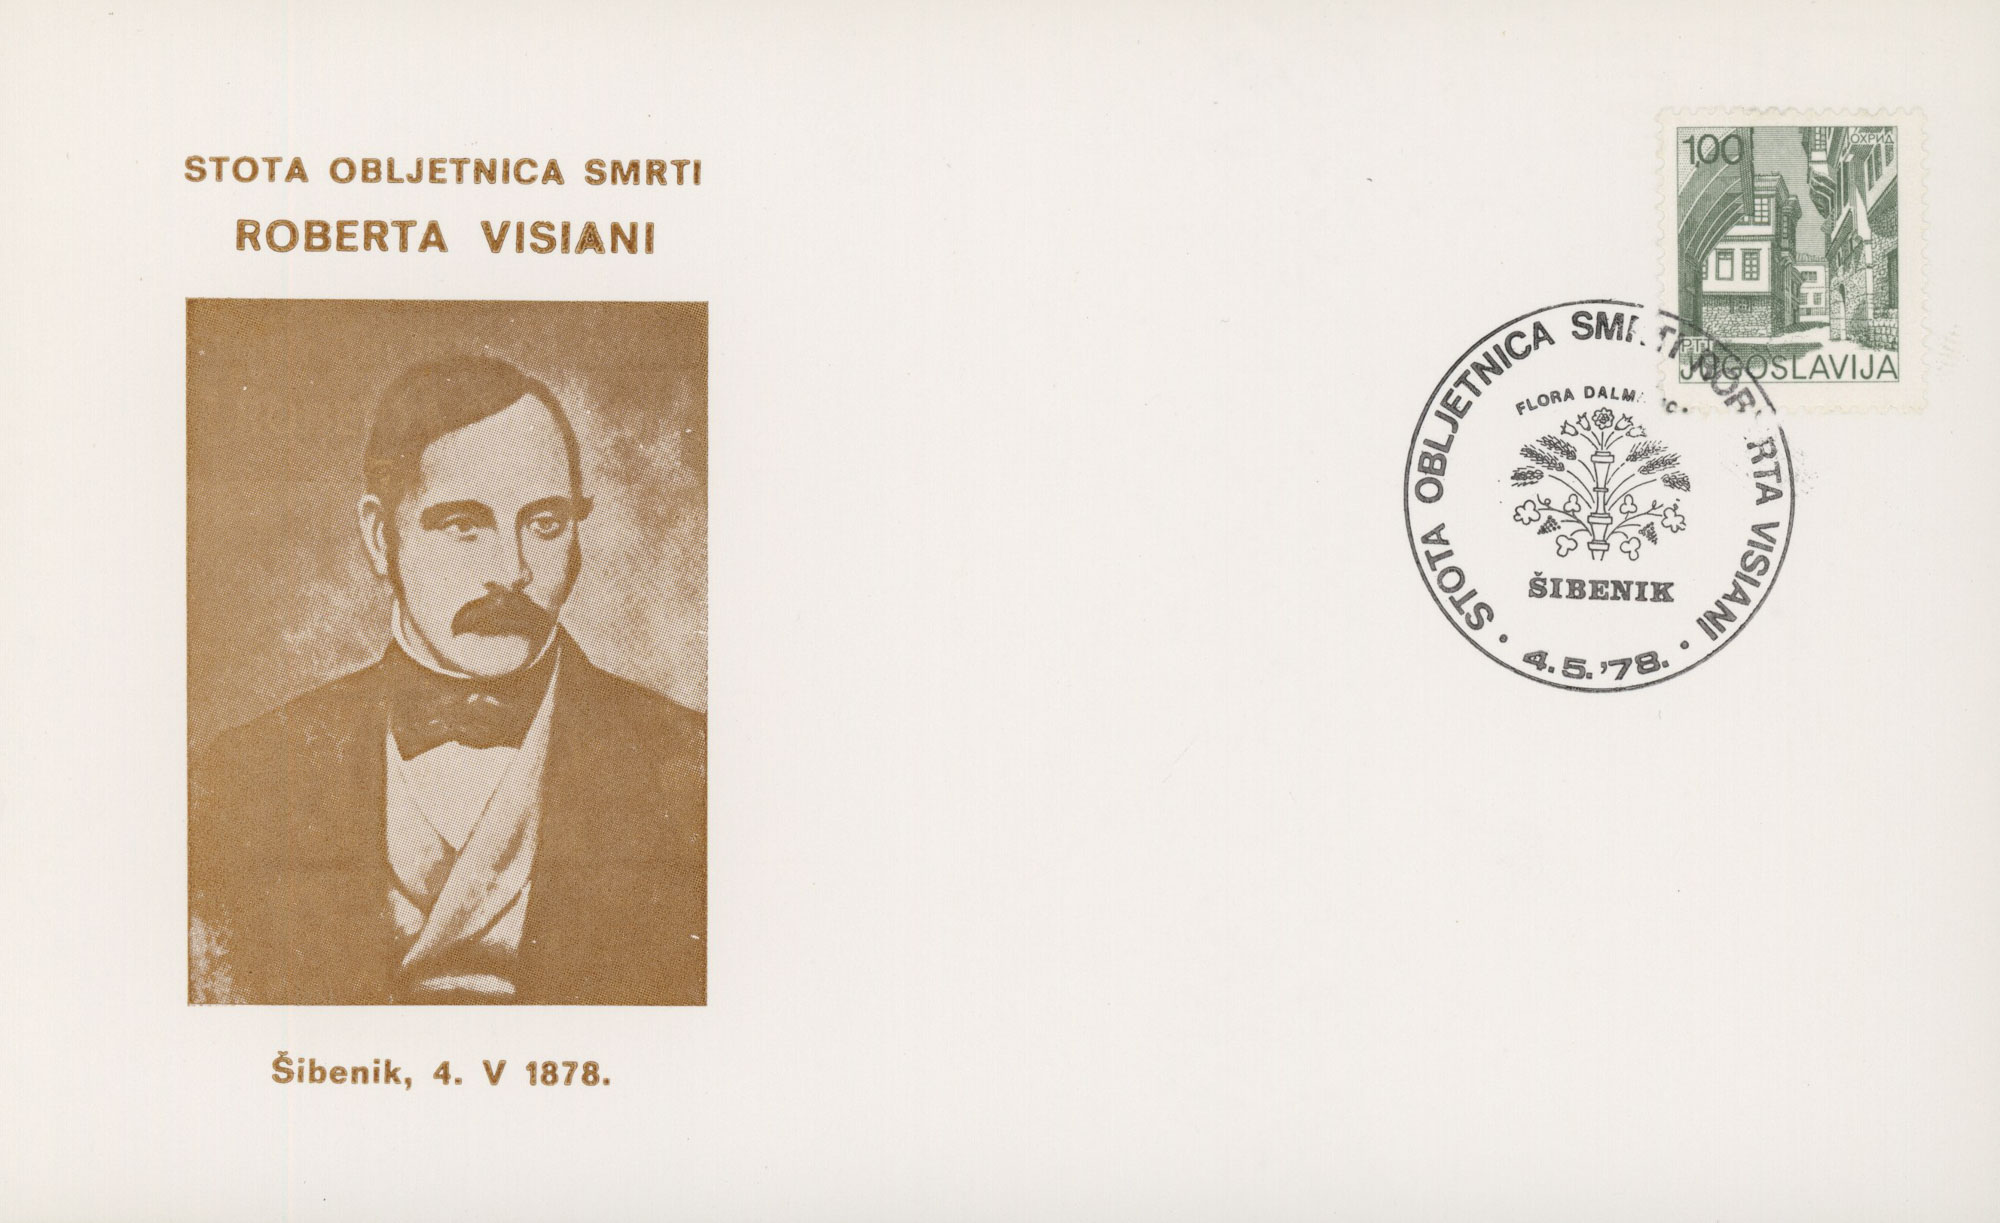 cartolina commemorativa in onore del centenario della morte di Roberto De Visiani